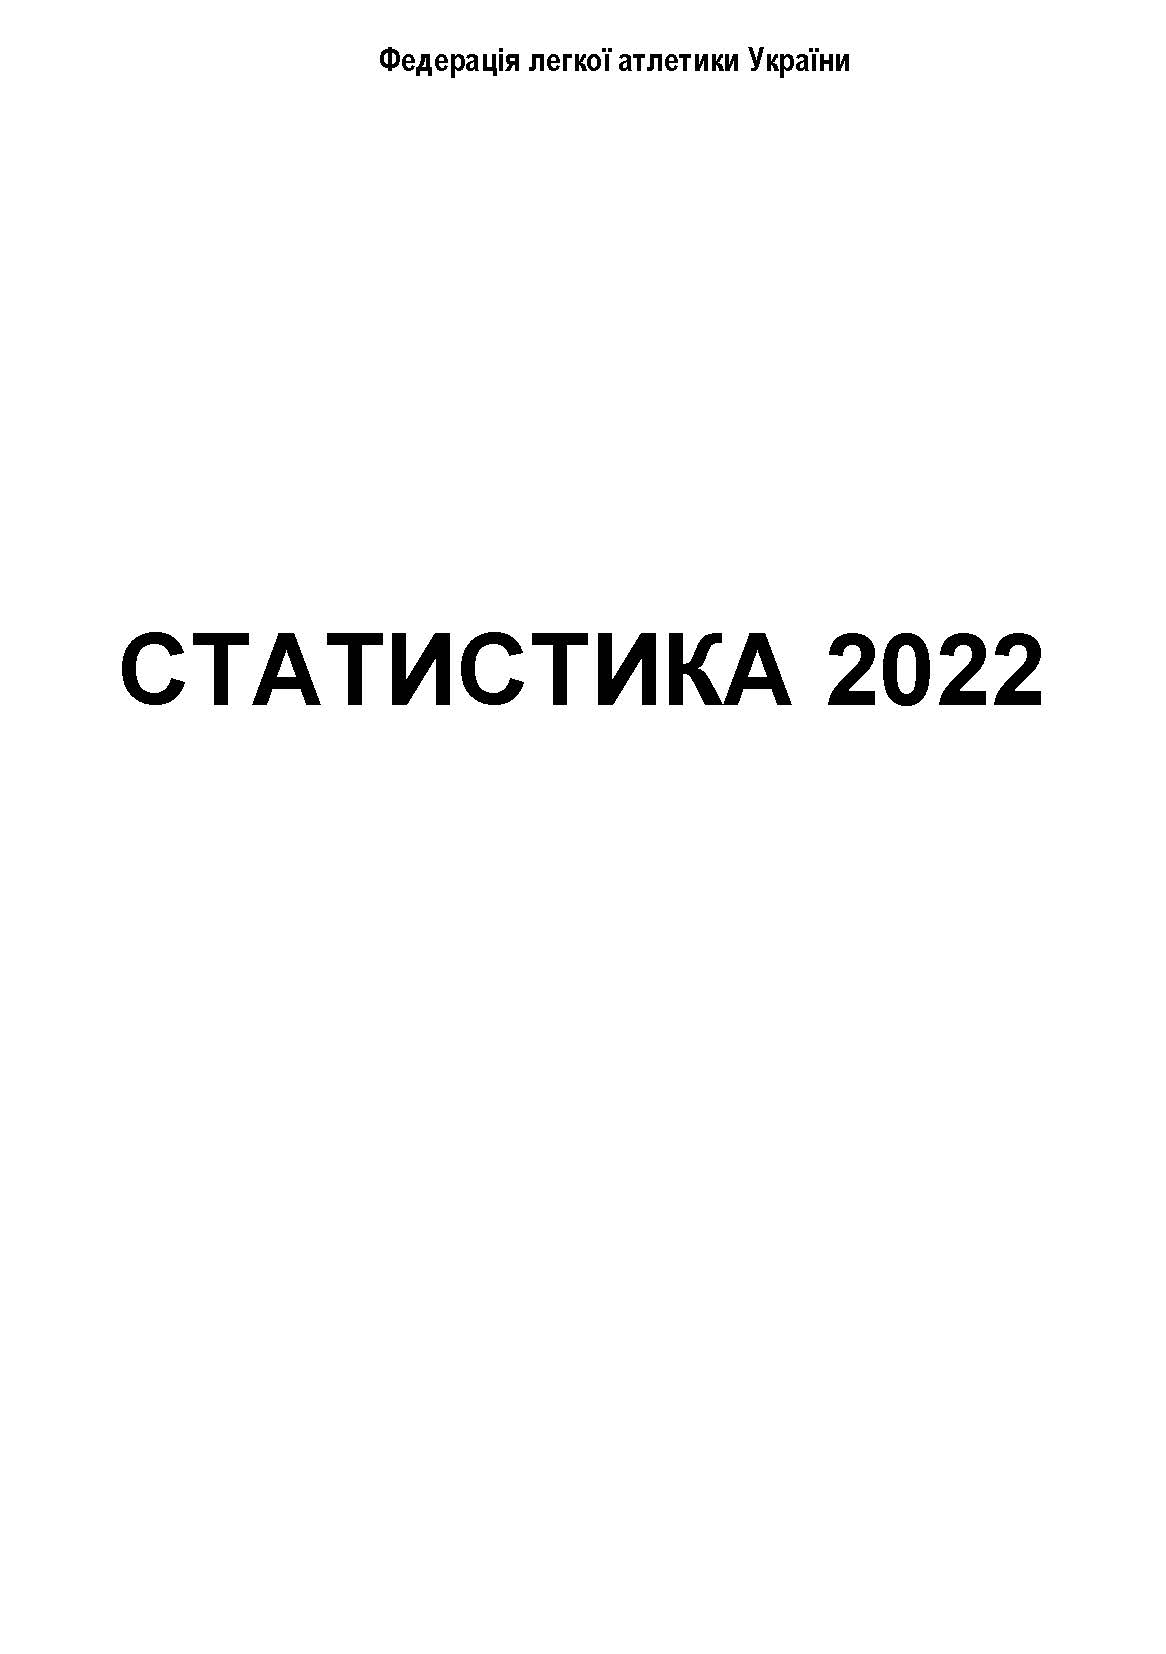 Опубліковано легкоатлетичний довідник «Статистика 2022»